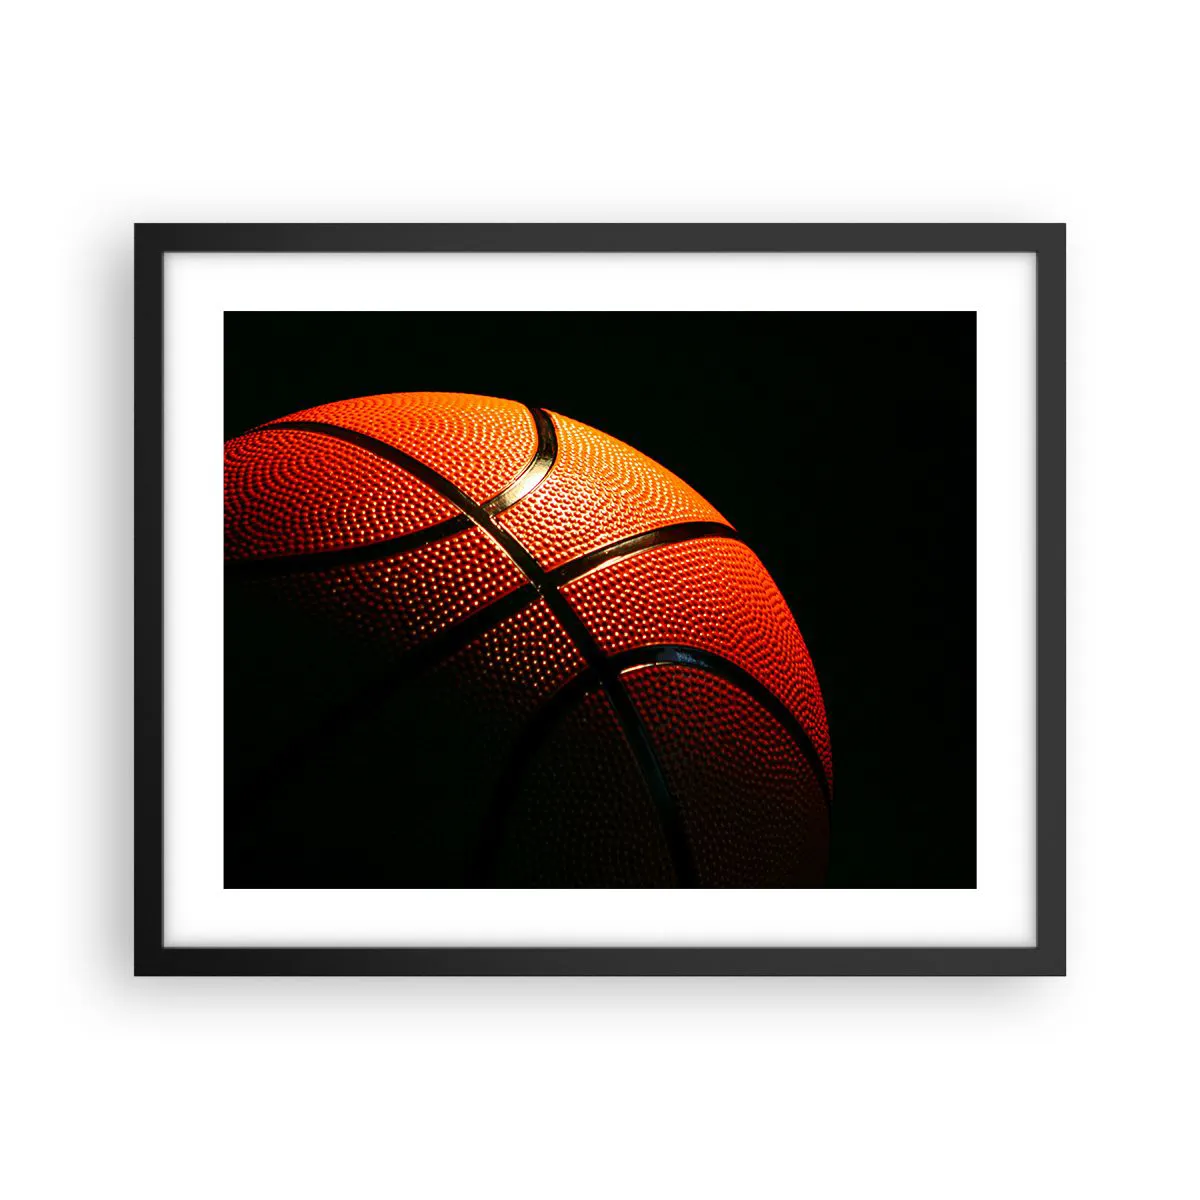 Poster in einem schwarzem Rahmen Arttor 50x40 cm - Schön wie ein Planet - Sport, Basketball, Basketball, Hobby, Rivalität, Ins Wohnzimmer, Für Schlafzimmer, Braun, Schwarz, Horizontal, P2BAA50x40-2225